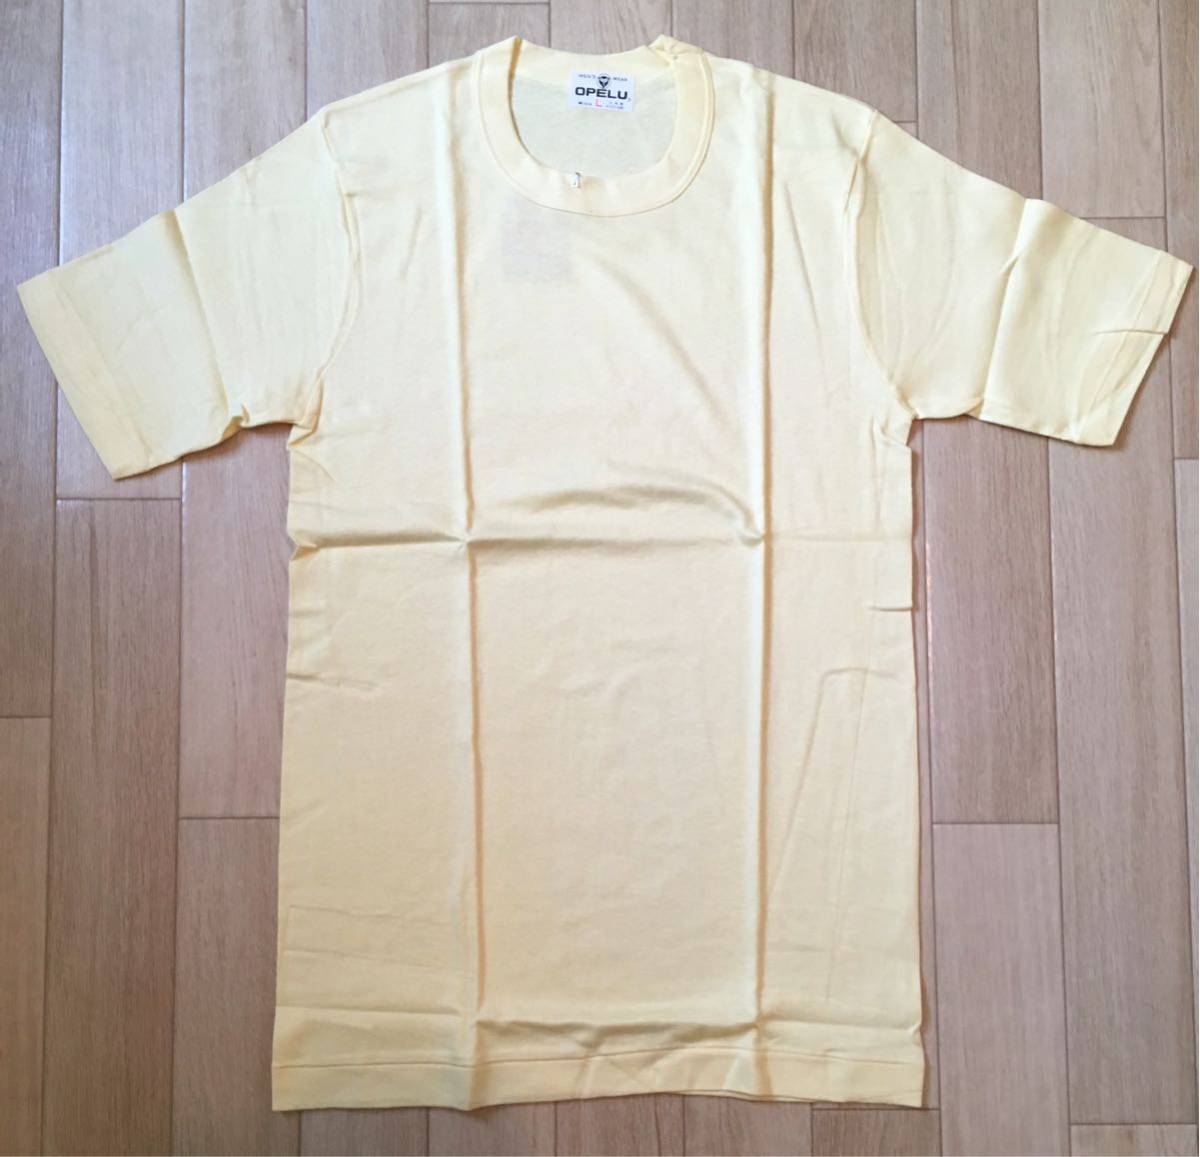 デッドストック 新品未使用品!!「OPELU」半袖Tシャツ L-Yellow SIZE:L 日本製 ヴィンテージ 70's-80's_画像1